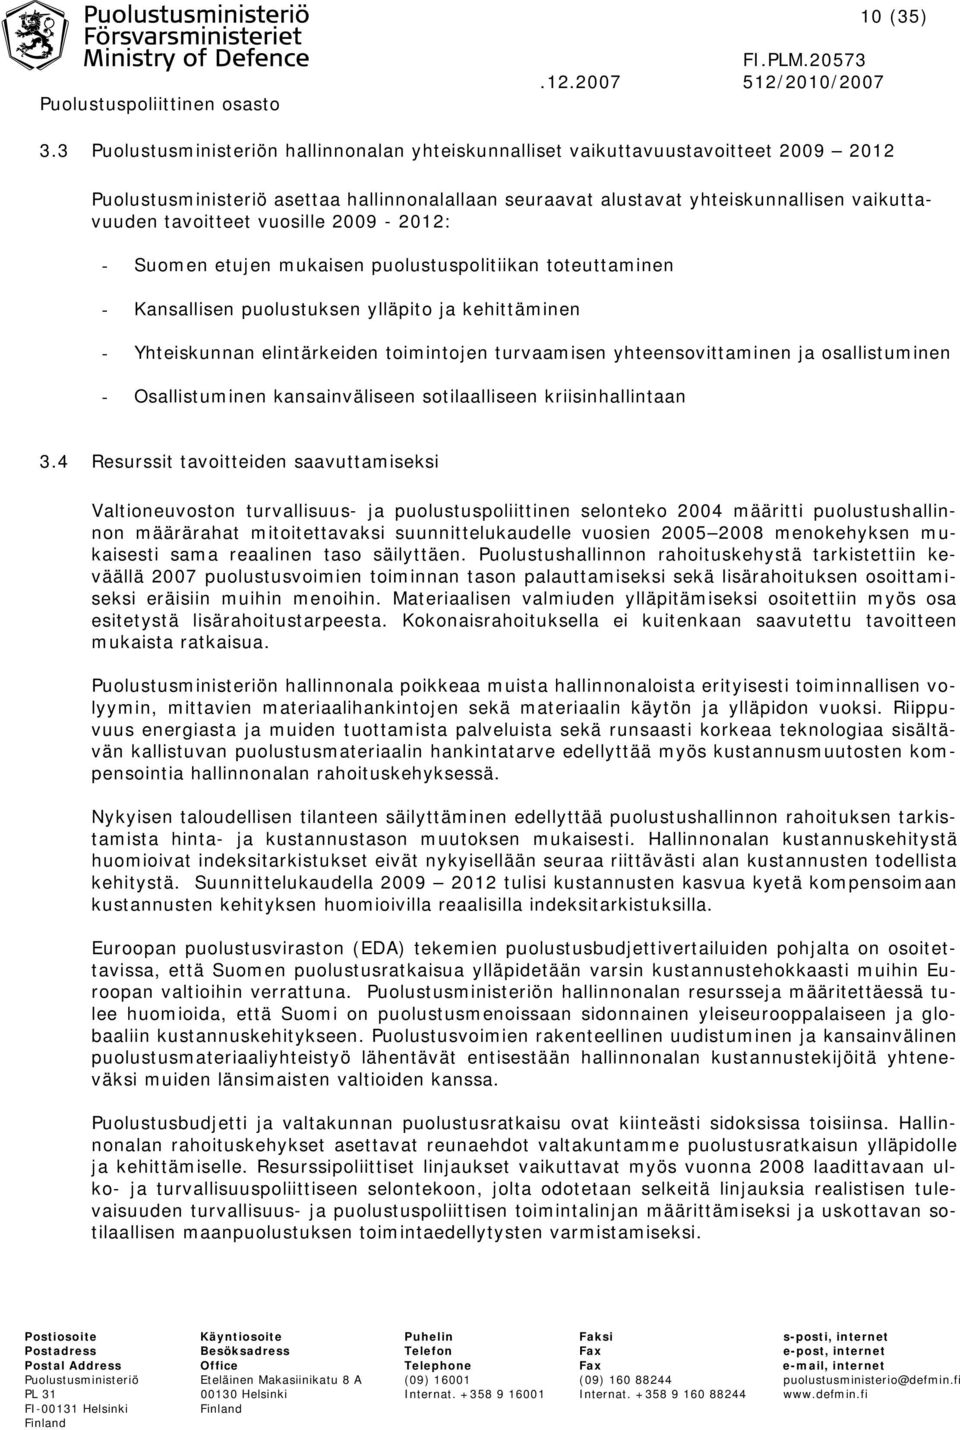 vuosille 2009-2012: - Suomen etujen mukaisen puolustuspolitiikan toteuttaminen - Kansallisen puolustuksen ylläpito ja kehittäminen - Yhteiskunnan elintärkeiden toimintojen turvaamisen